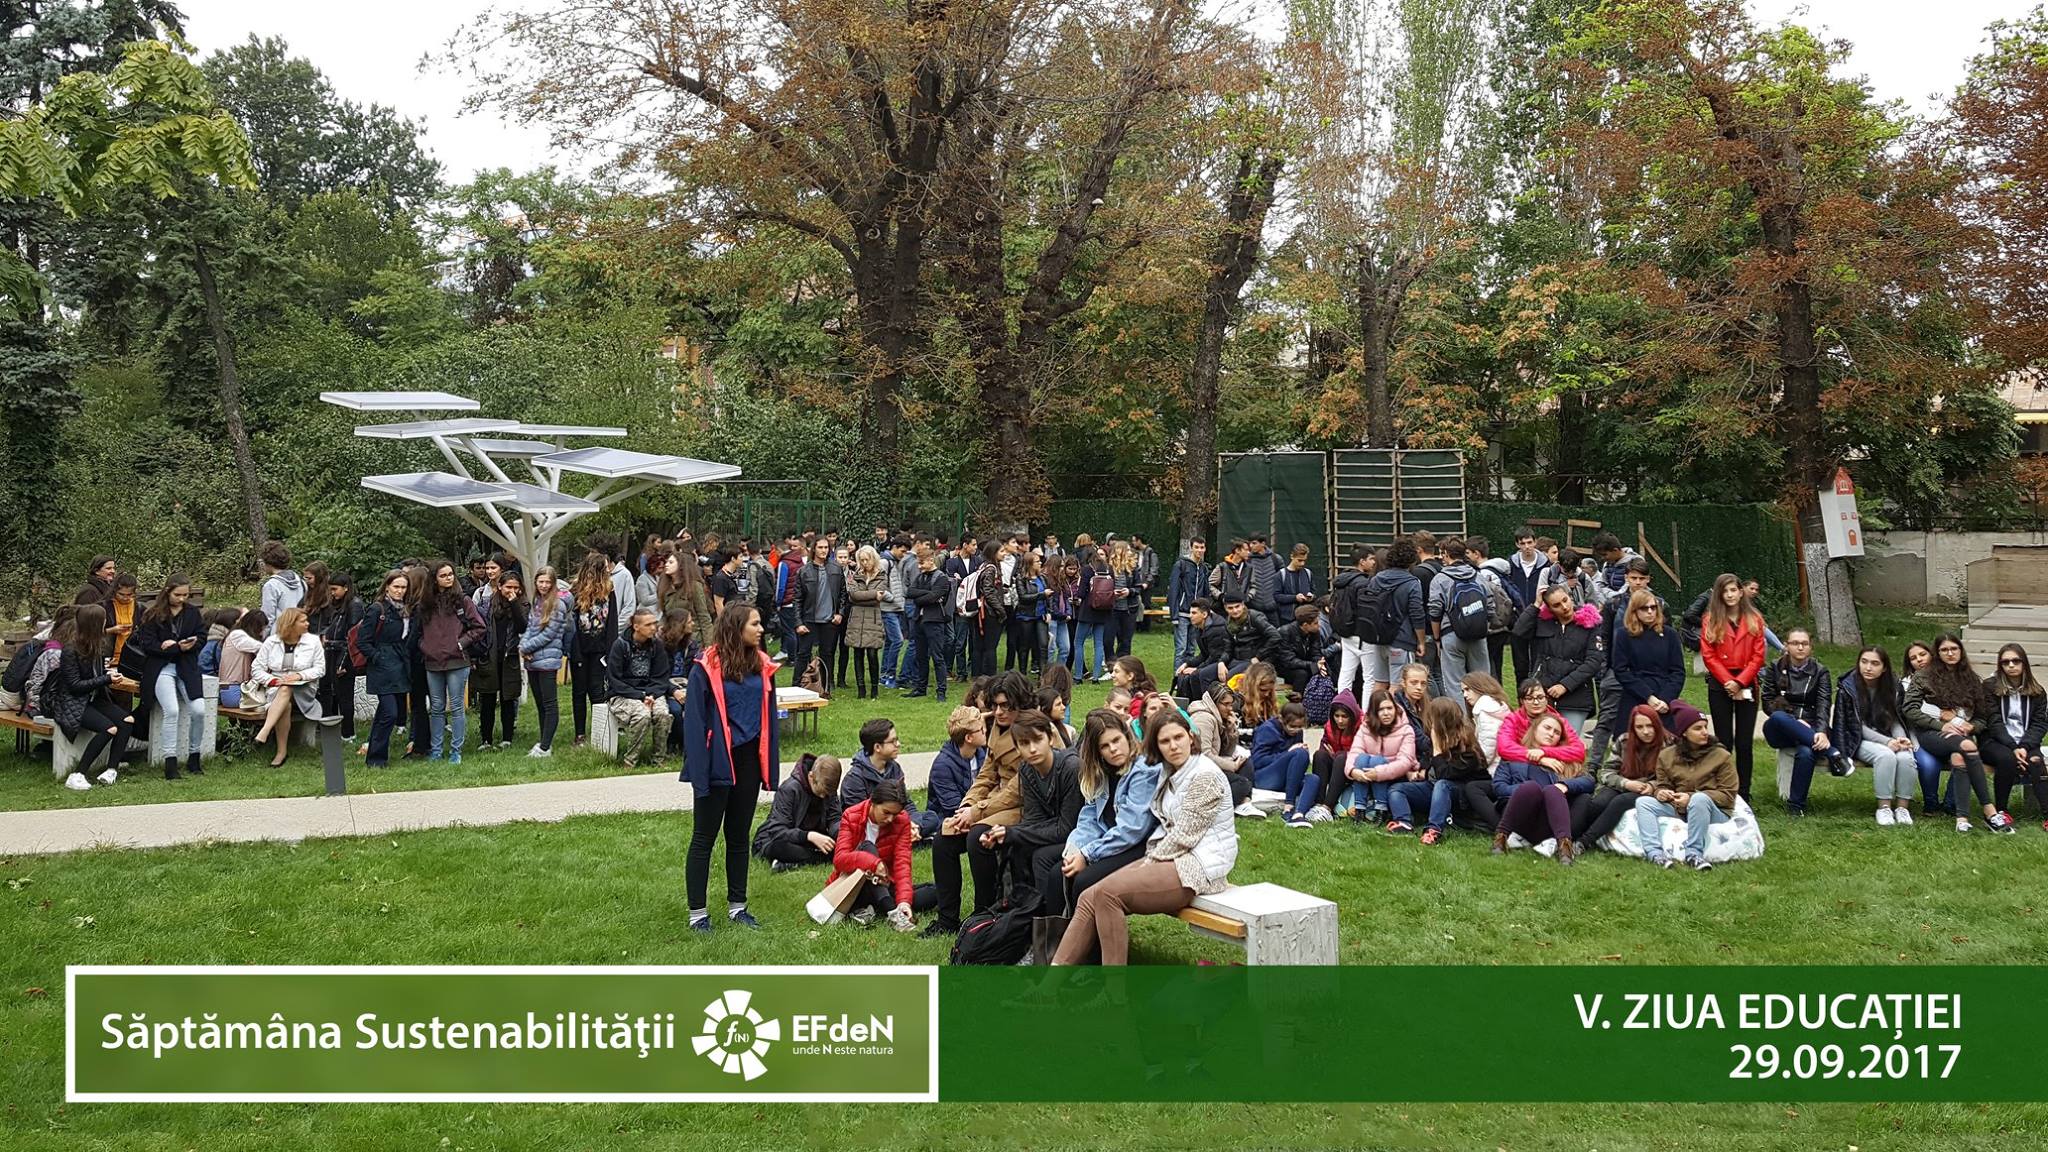 600 de specialişti, studenţi şi elevi au participat la Săptămâna Sustenabilității EFdeN 